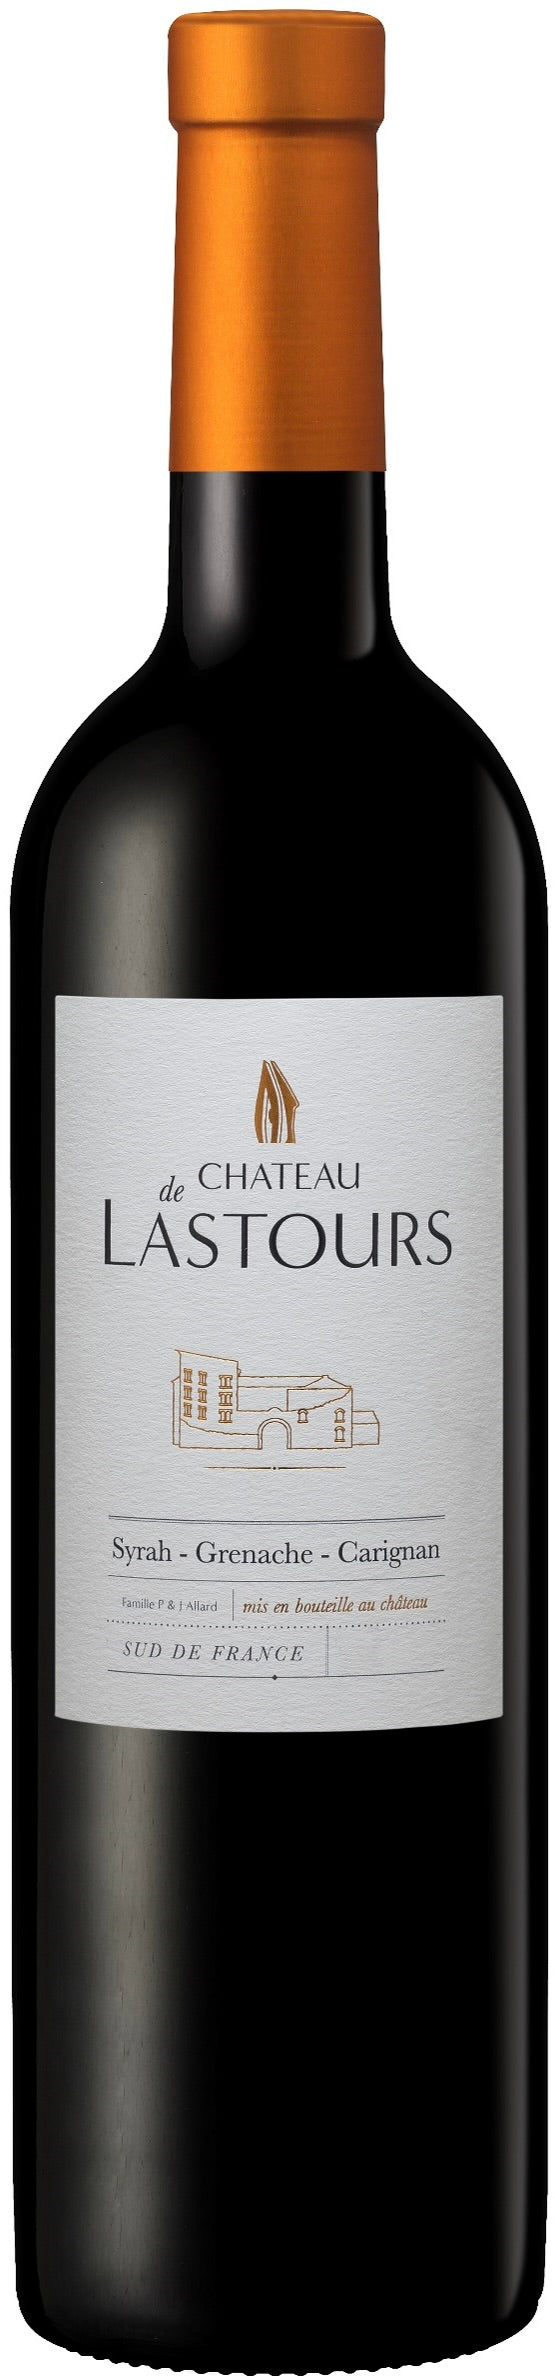 Chateau de Lastours - Lastours Rouge